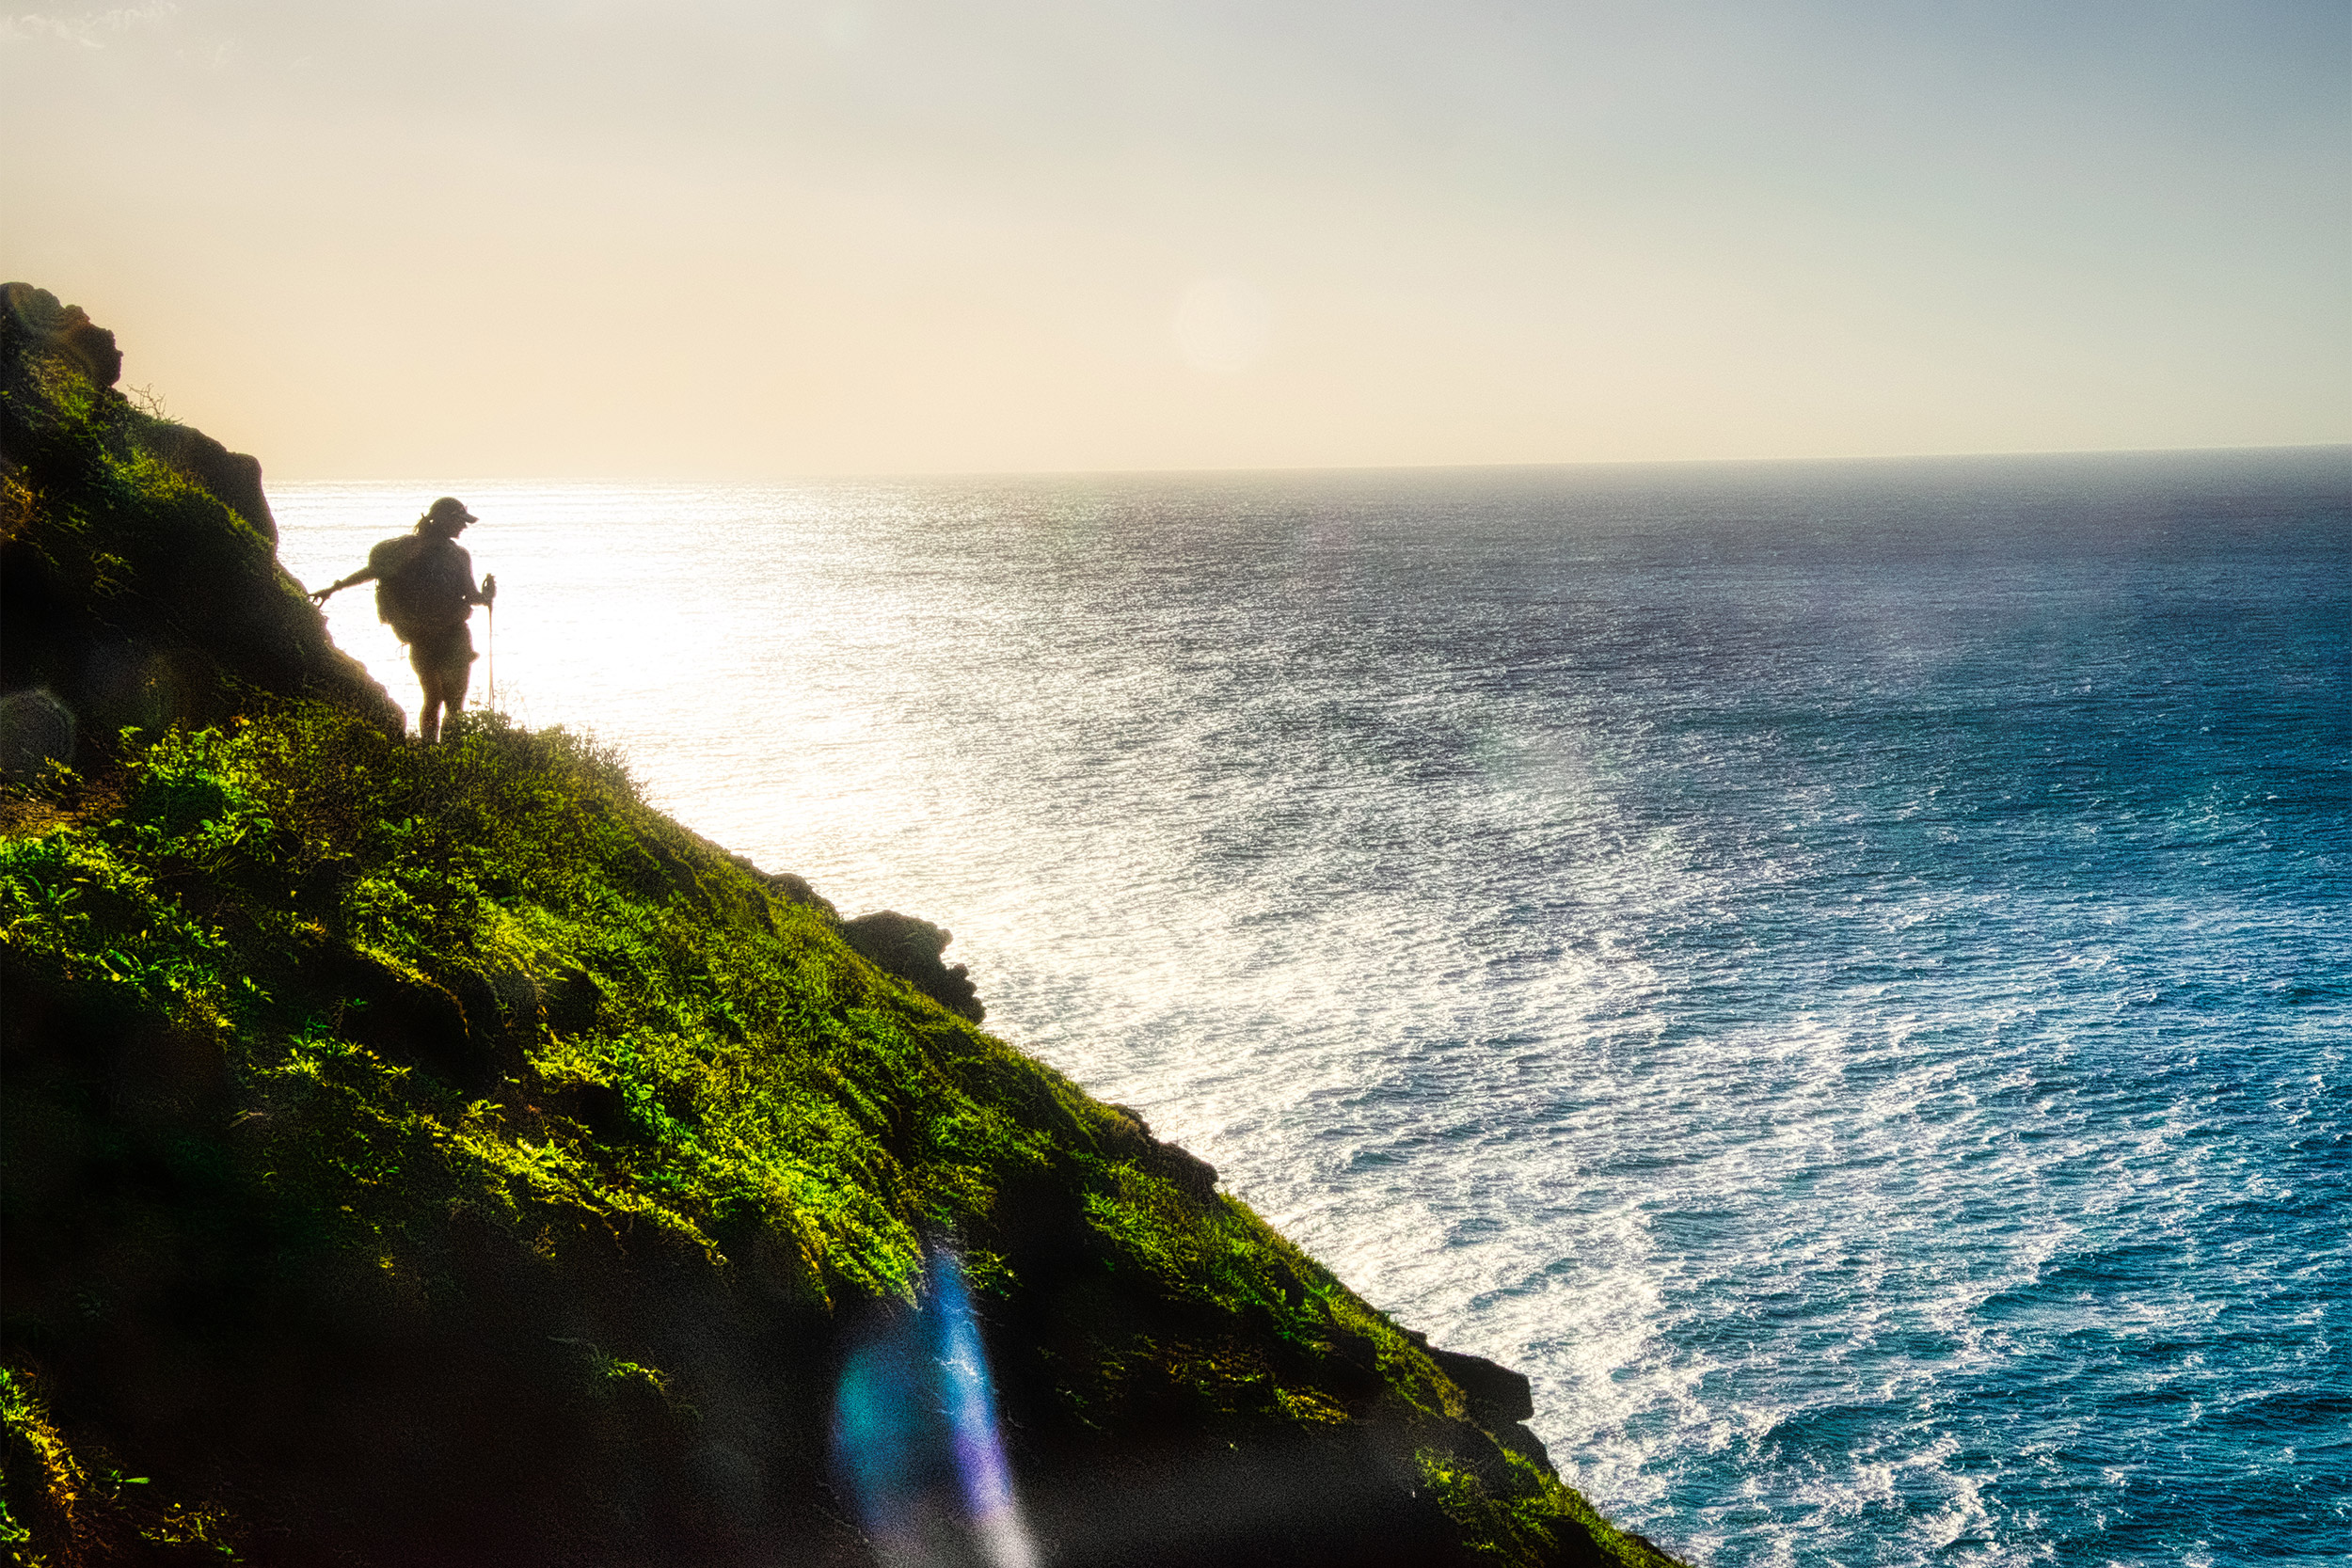 Kirstin Woody Scott on cliff overlooking ocean.